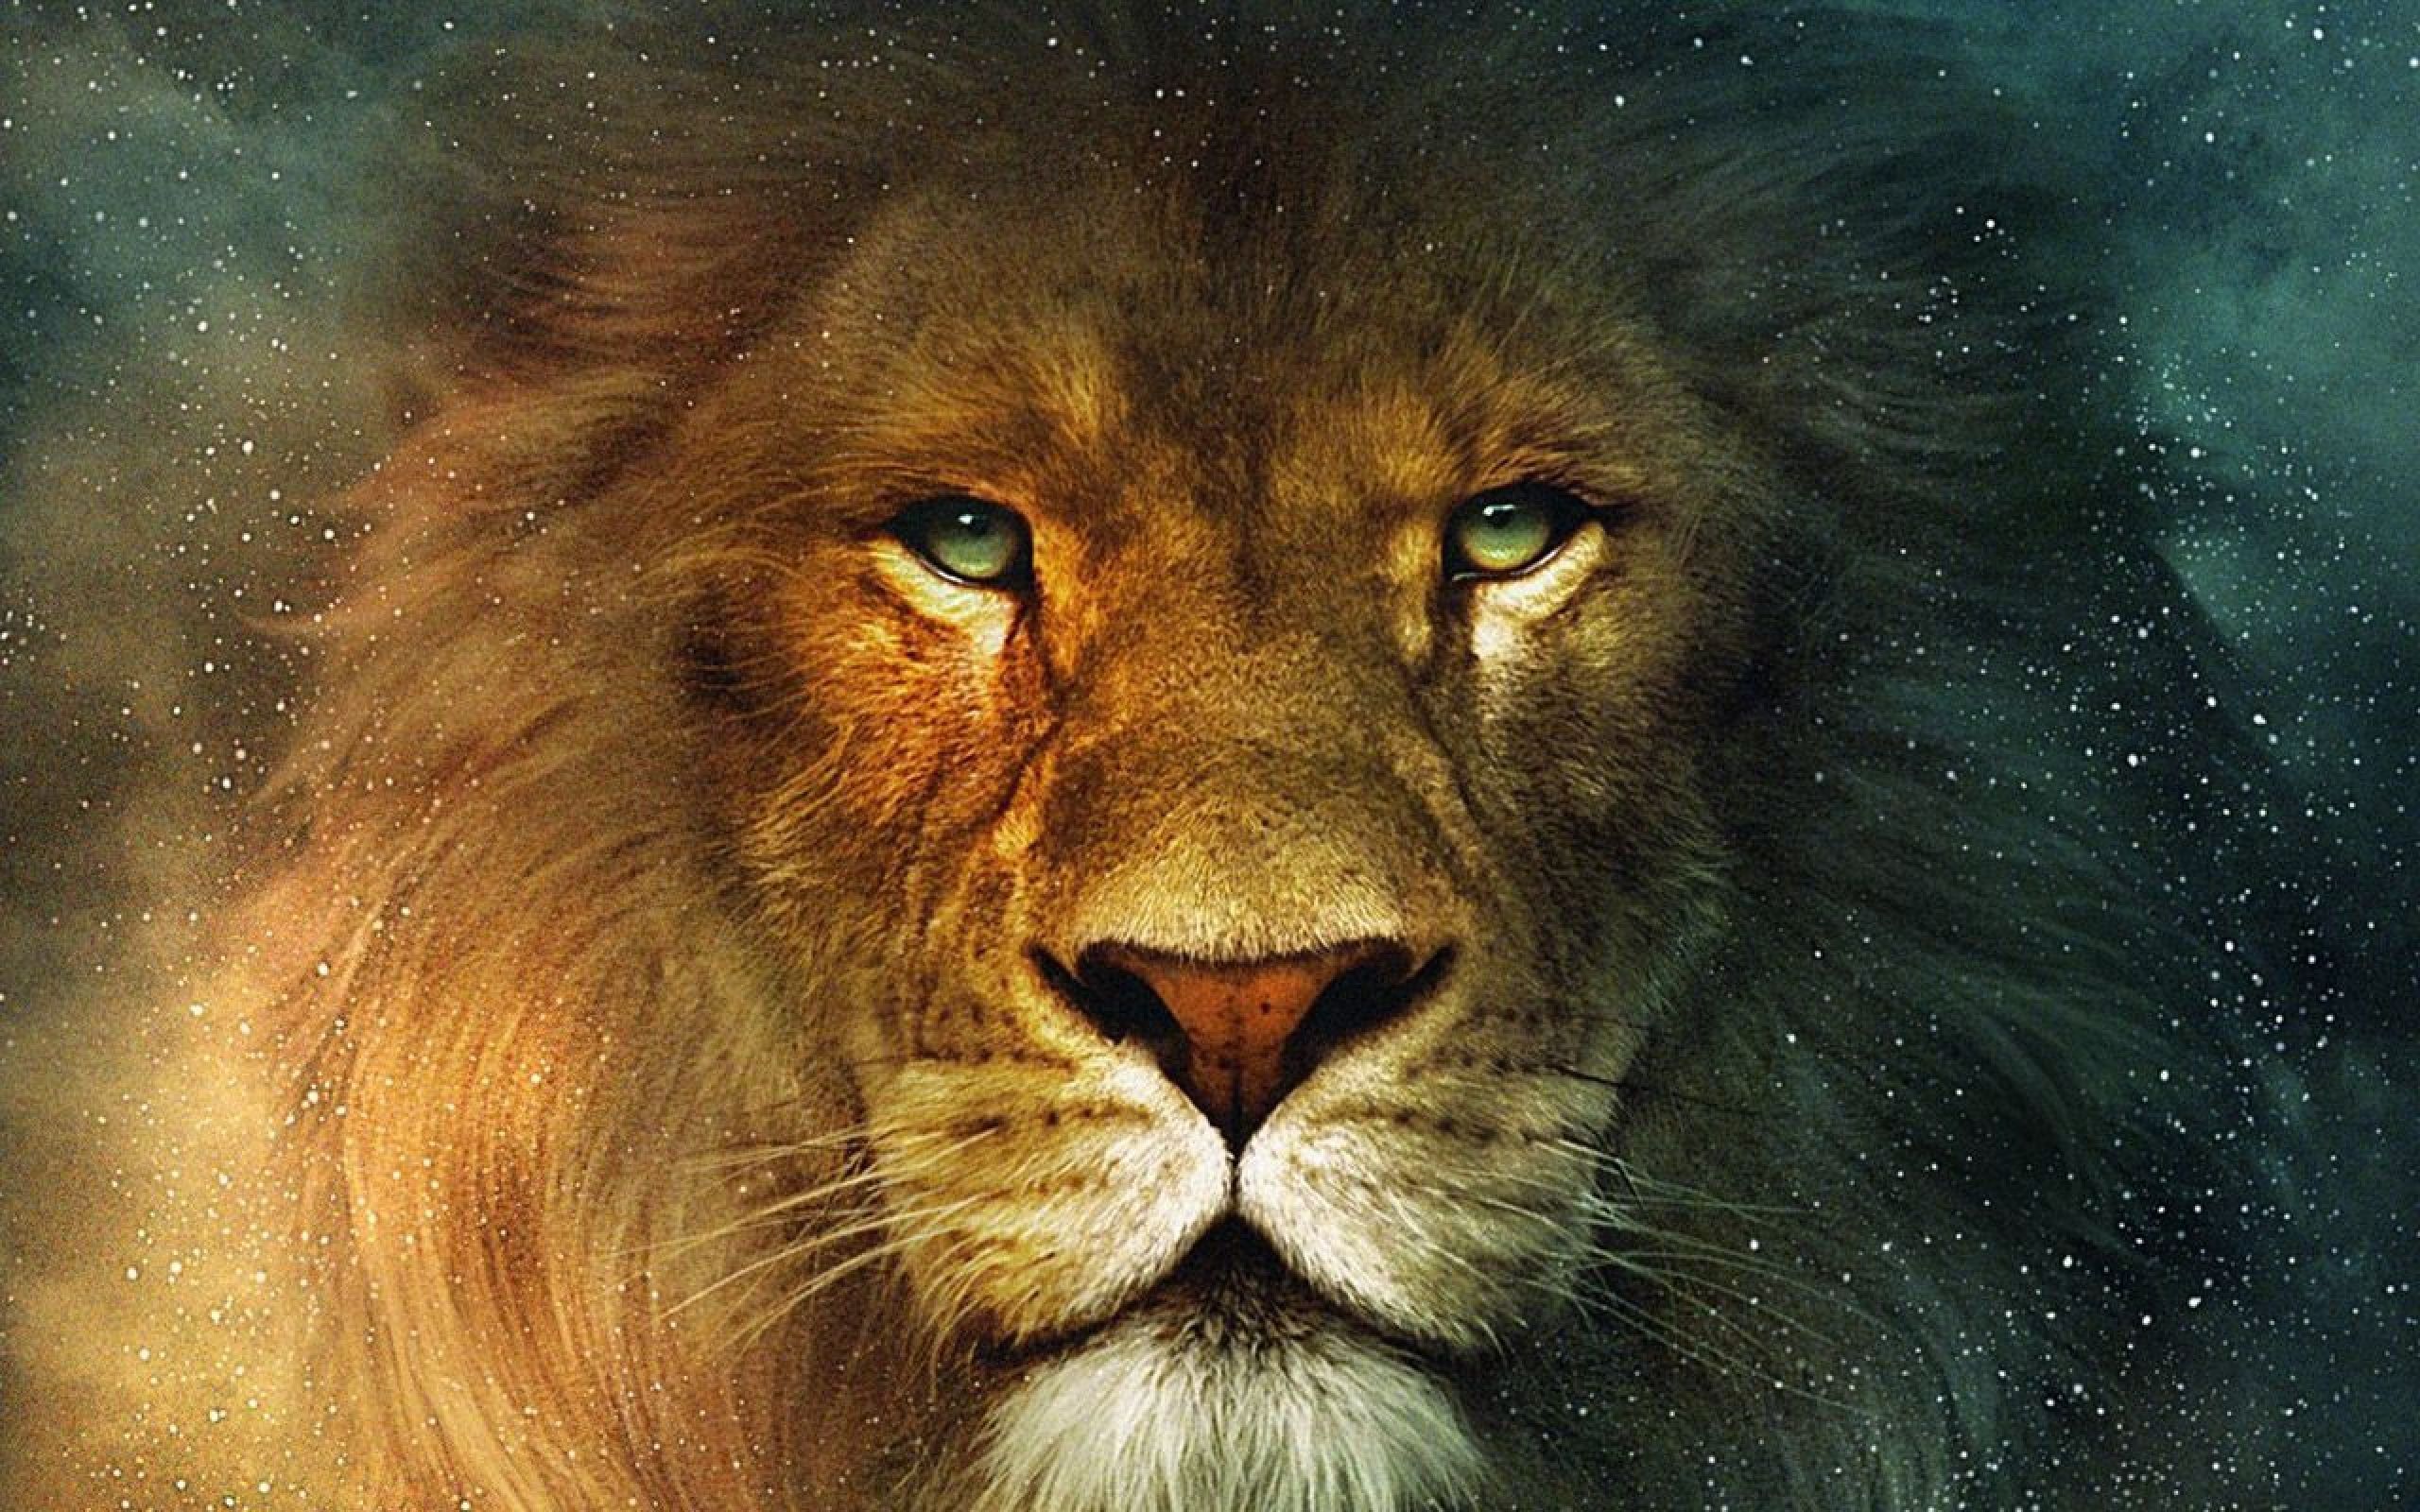 Sư tử: Sự kiêu hãnh, mạnh mẽ và oai phong của sư tử thật đáng sợ và thú vị. Nếu bạn thích khám phá thế giới động vật hoang dã, hãy đến với hình ảnh này và tìm hiểu thêm về loài sư tử đầy bí ẩn và đa dạng.